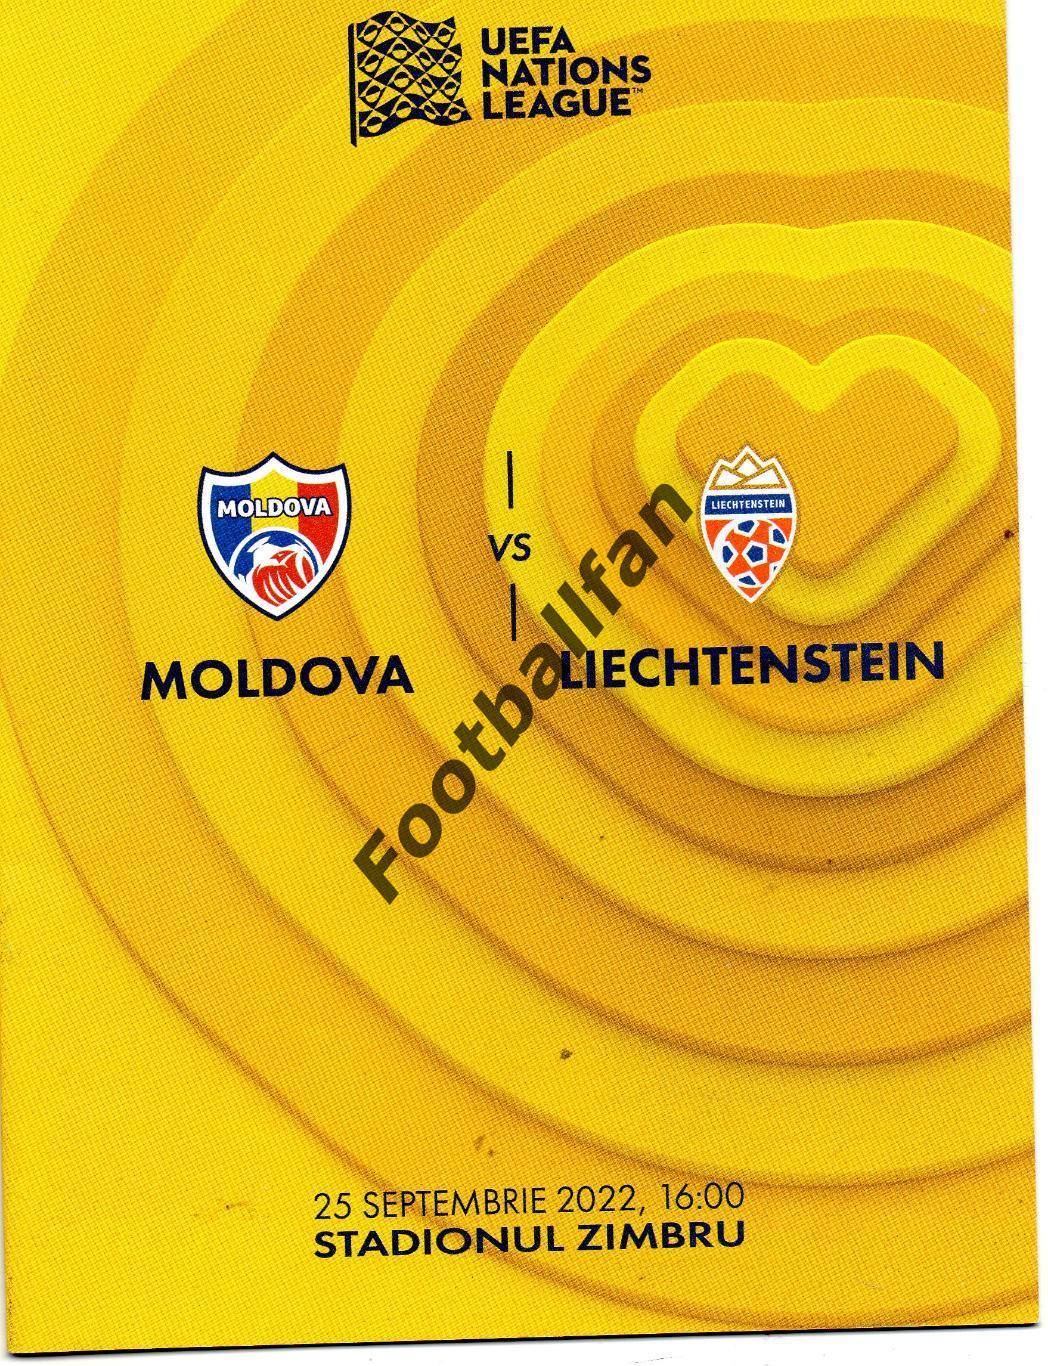 Молдова - Лихтенштейн 25.09.2022